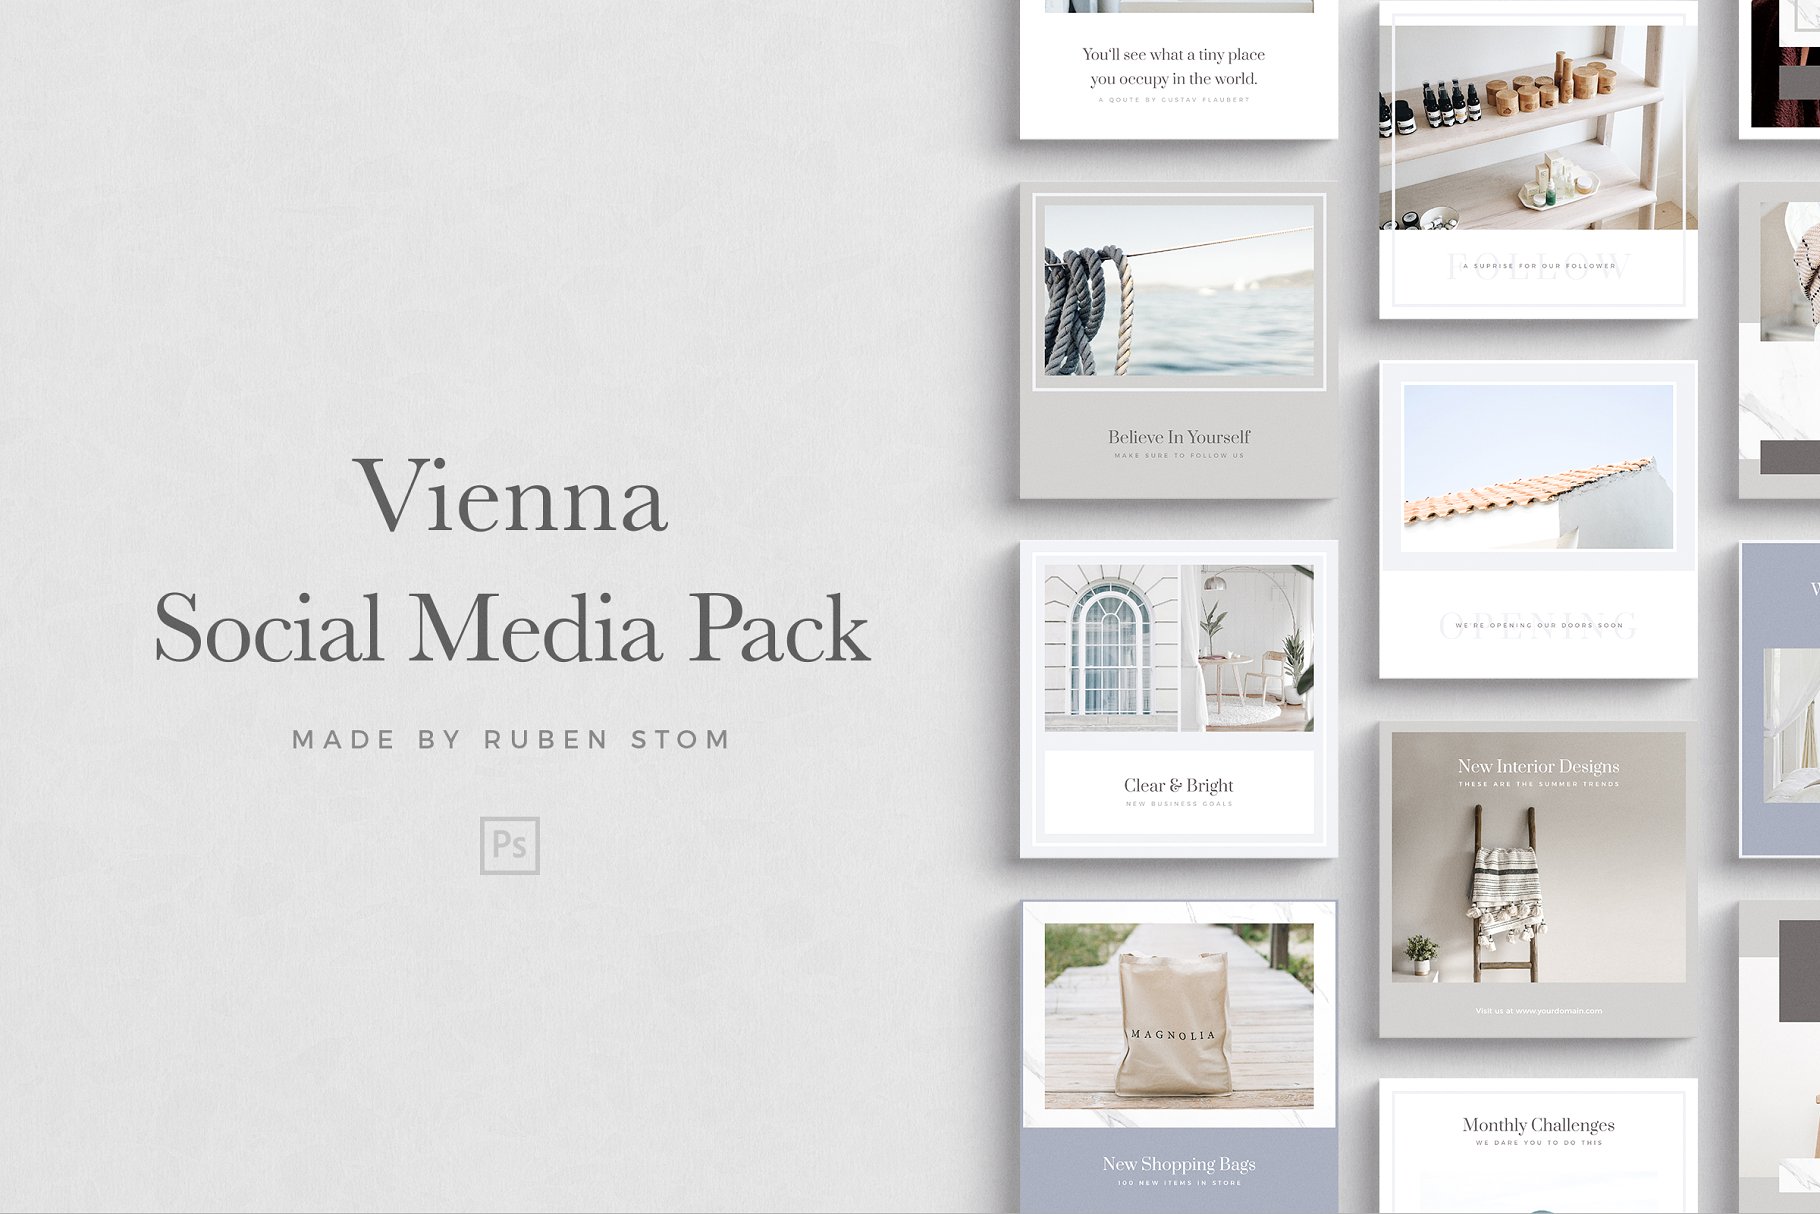 简约风社交媒体贴图设计模板素材库精选 Vienna Social Media Pack插图